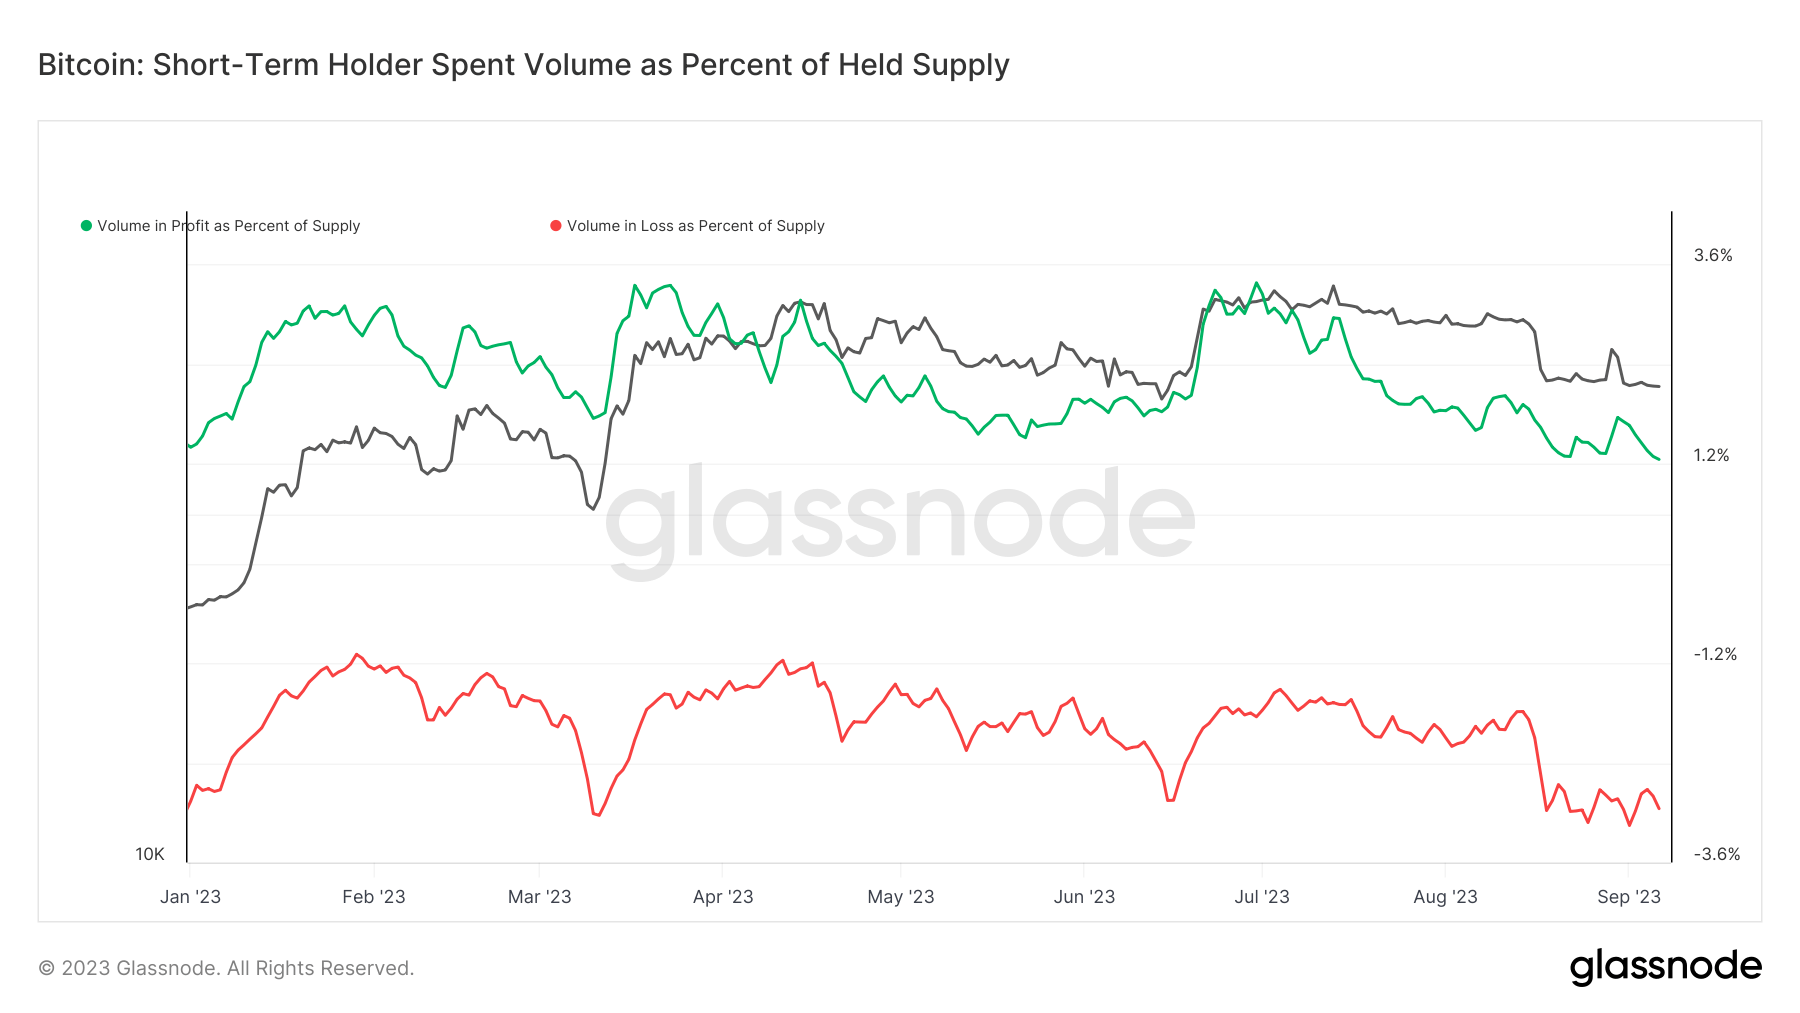 short-term holder spent volume as percent of held supply YTD 